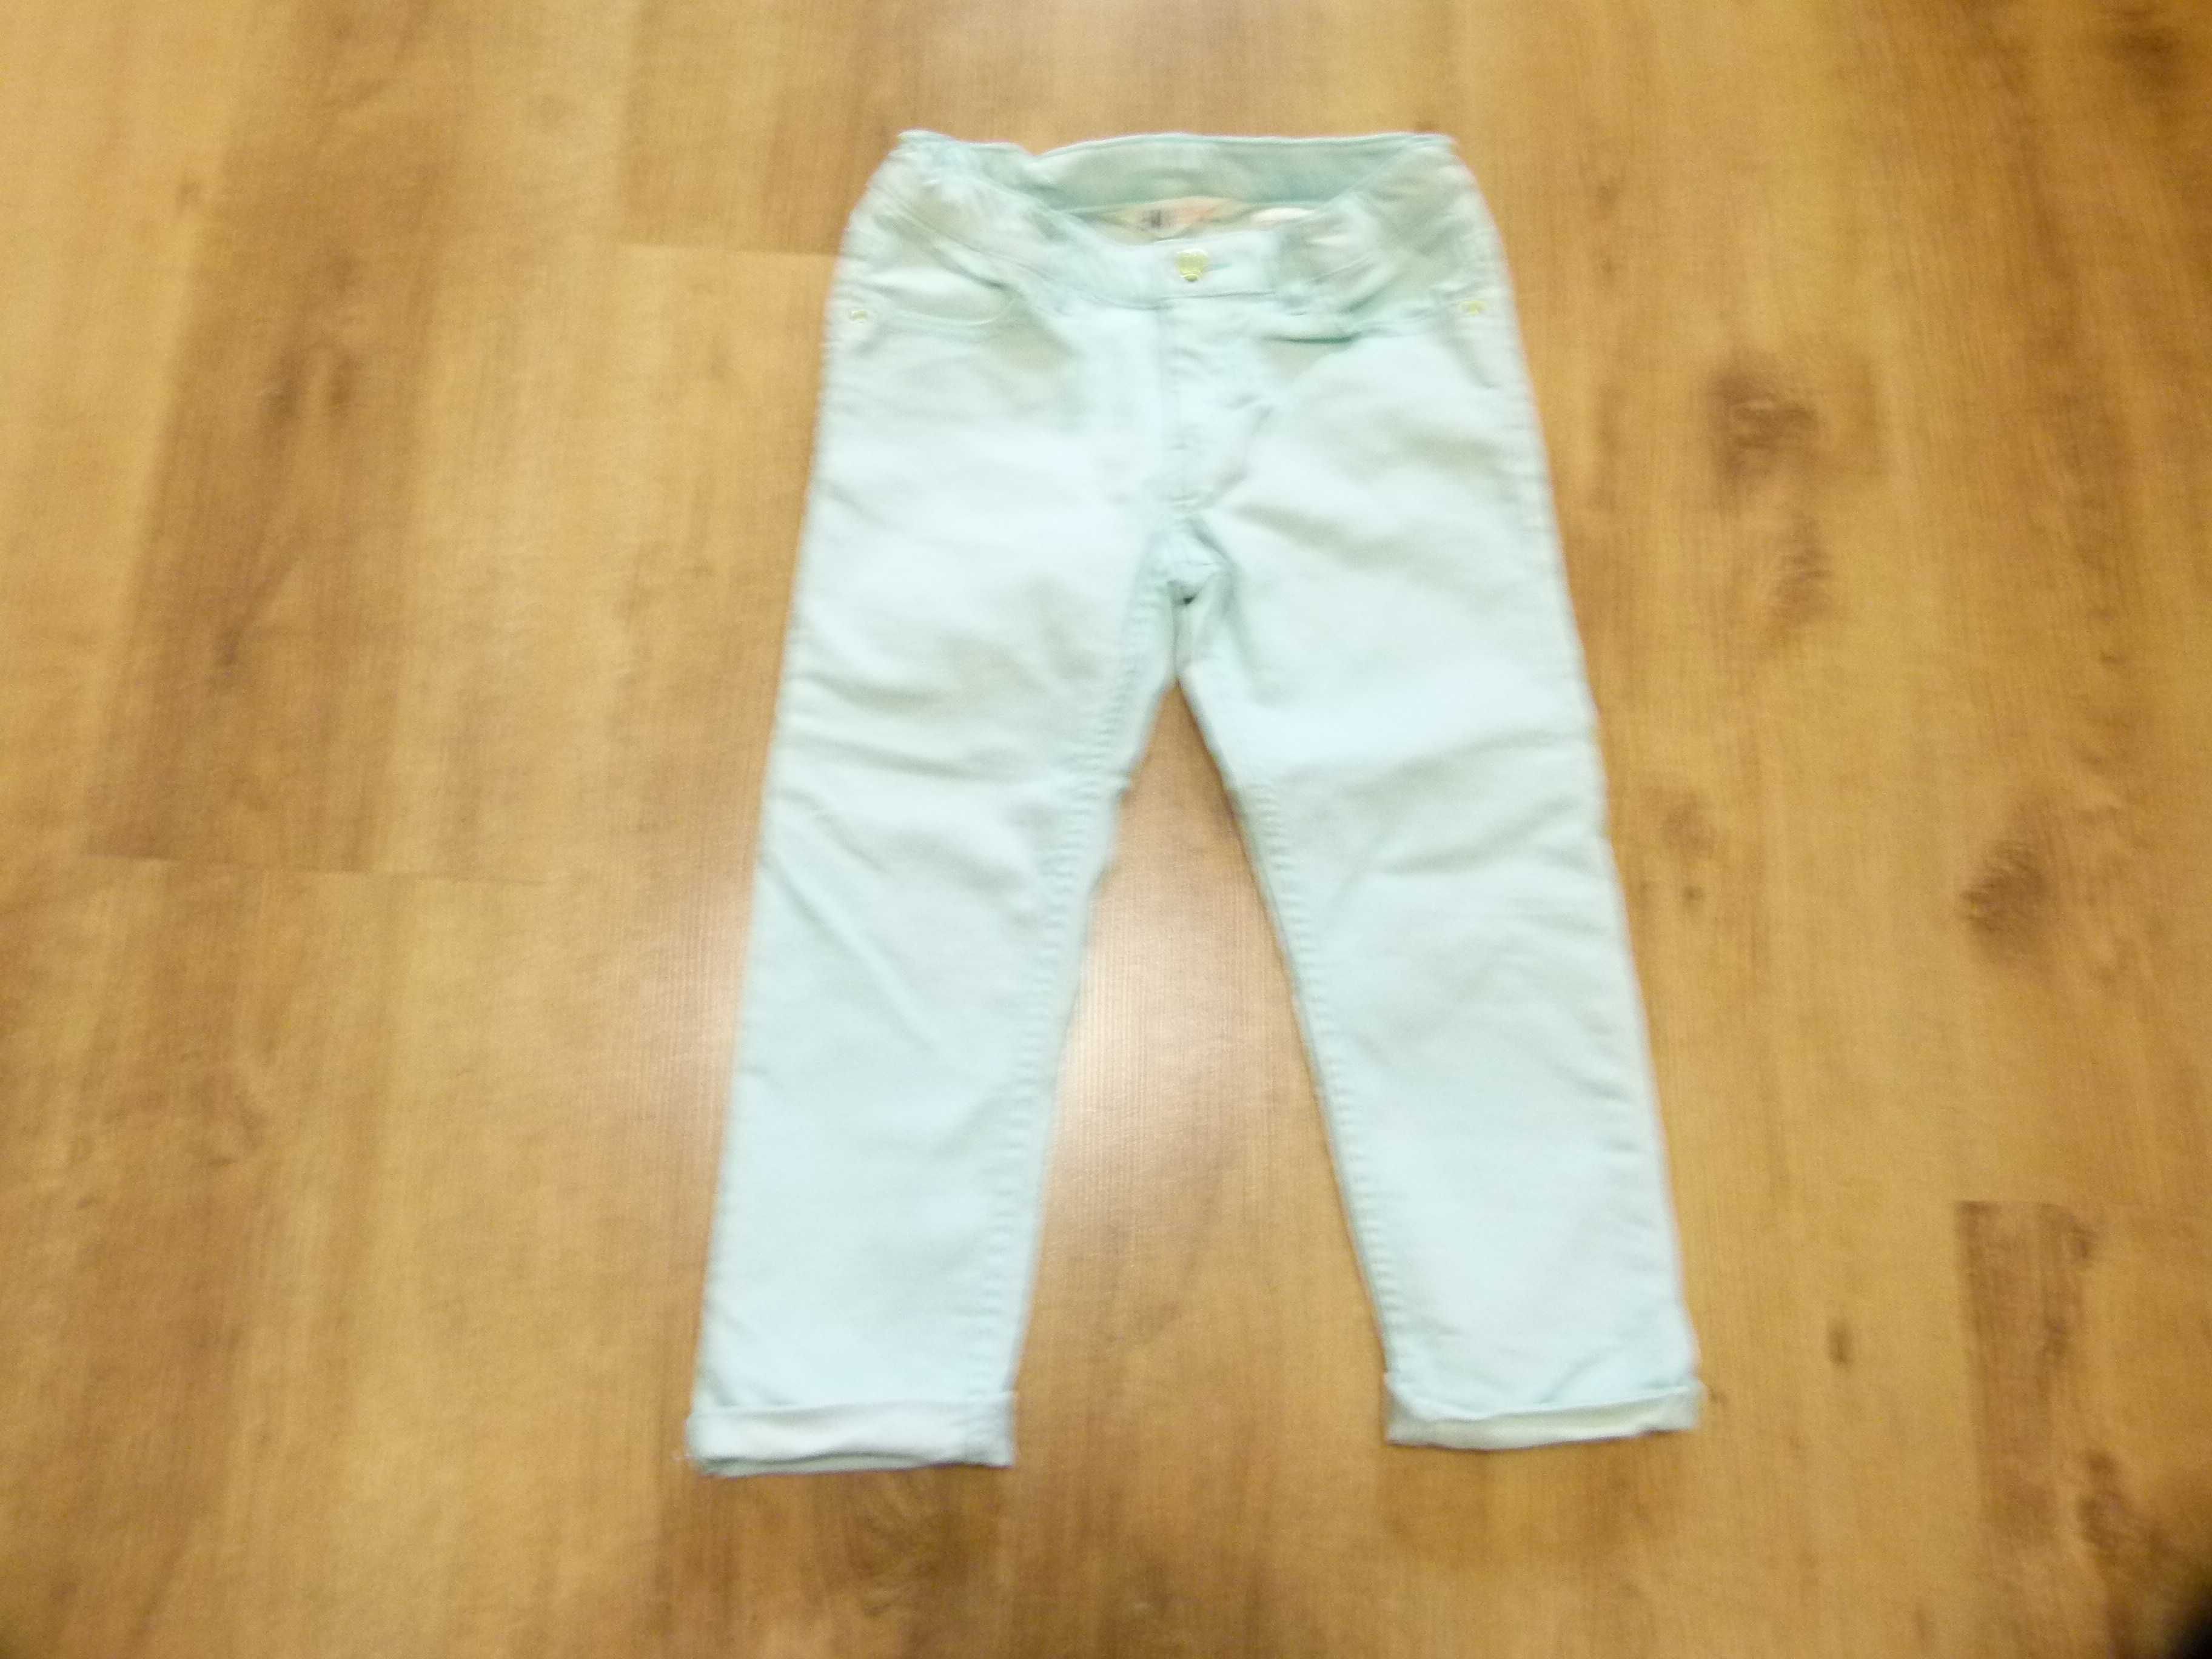 rozm 122 H&M spodnie jeans jasny niebieski turkusowy długość 3/4